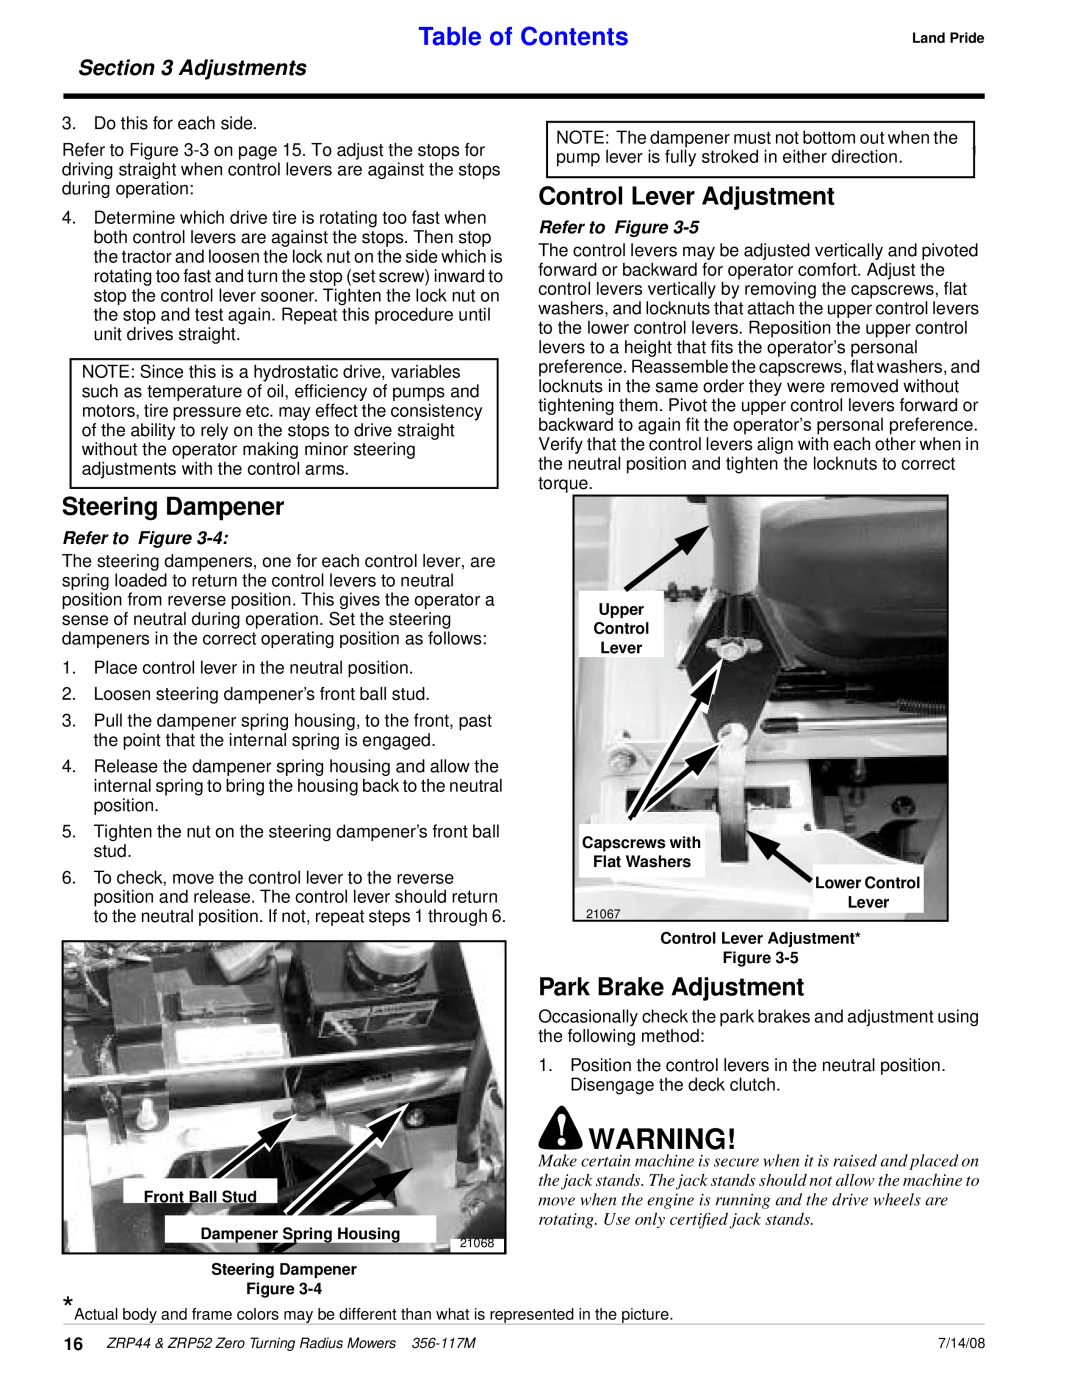 Land Pride ZRP52, ZRP44 Control Lever Adjustment, Steering Dampener, Park Brake Adjustment, Table of Contents, Adjustments 